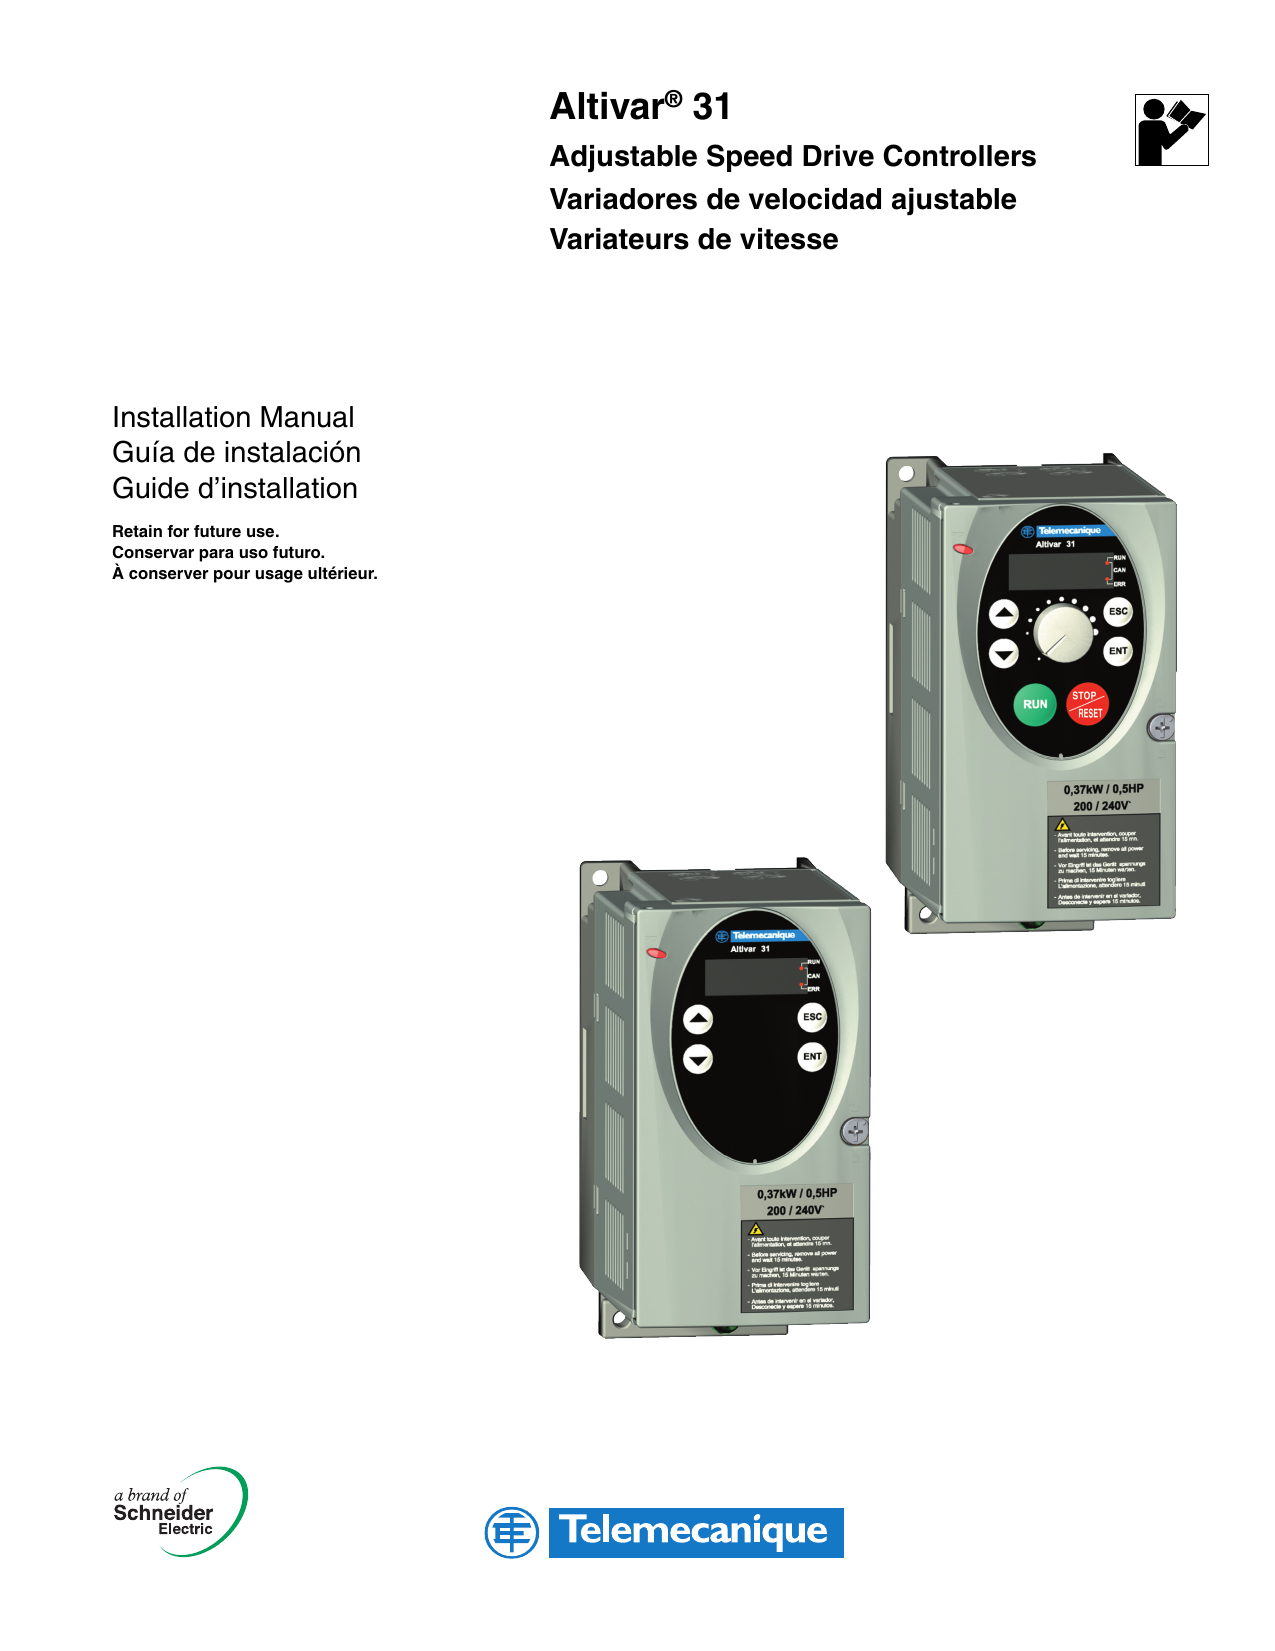 Details about   SQUARE D TELEMECANIQUE ALTIVAR 31 AC DRIVE PLASTIC DISPLAY COVER 3D657038 REV 01 